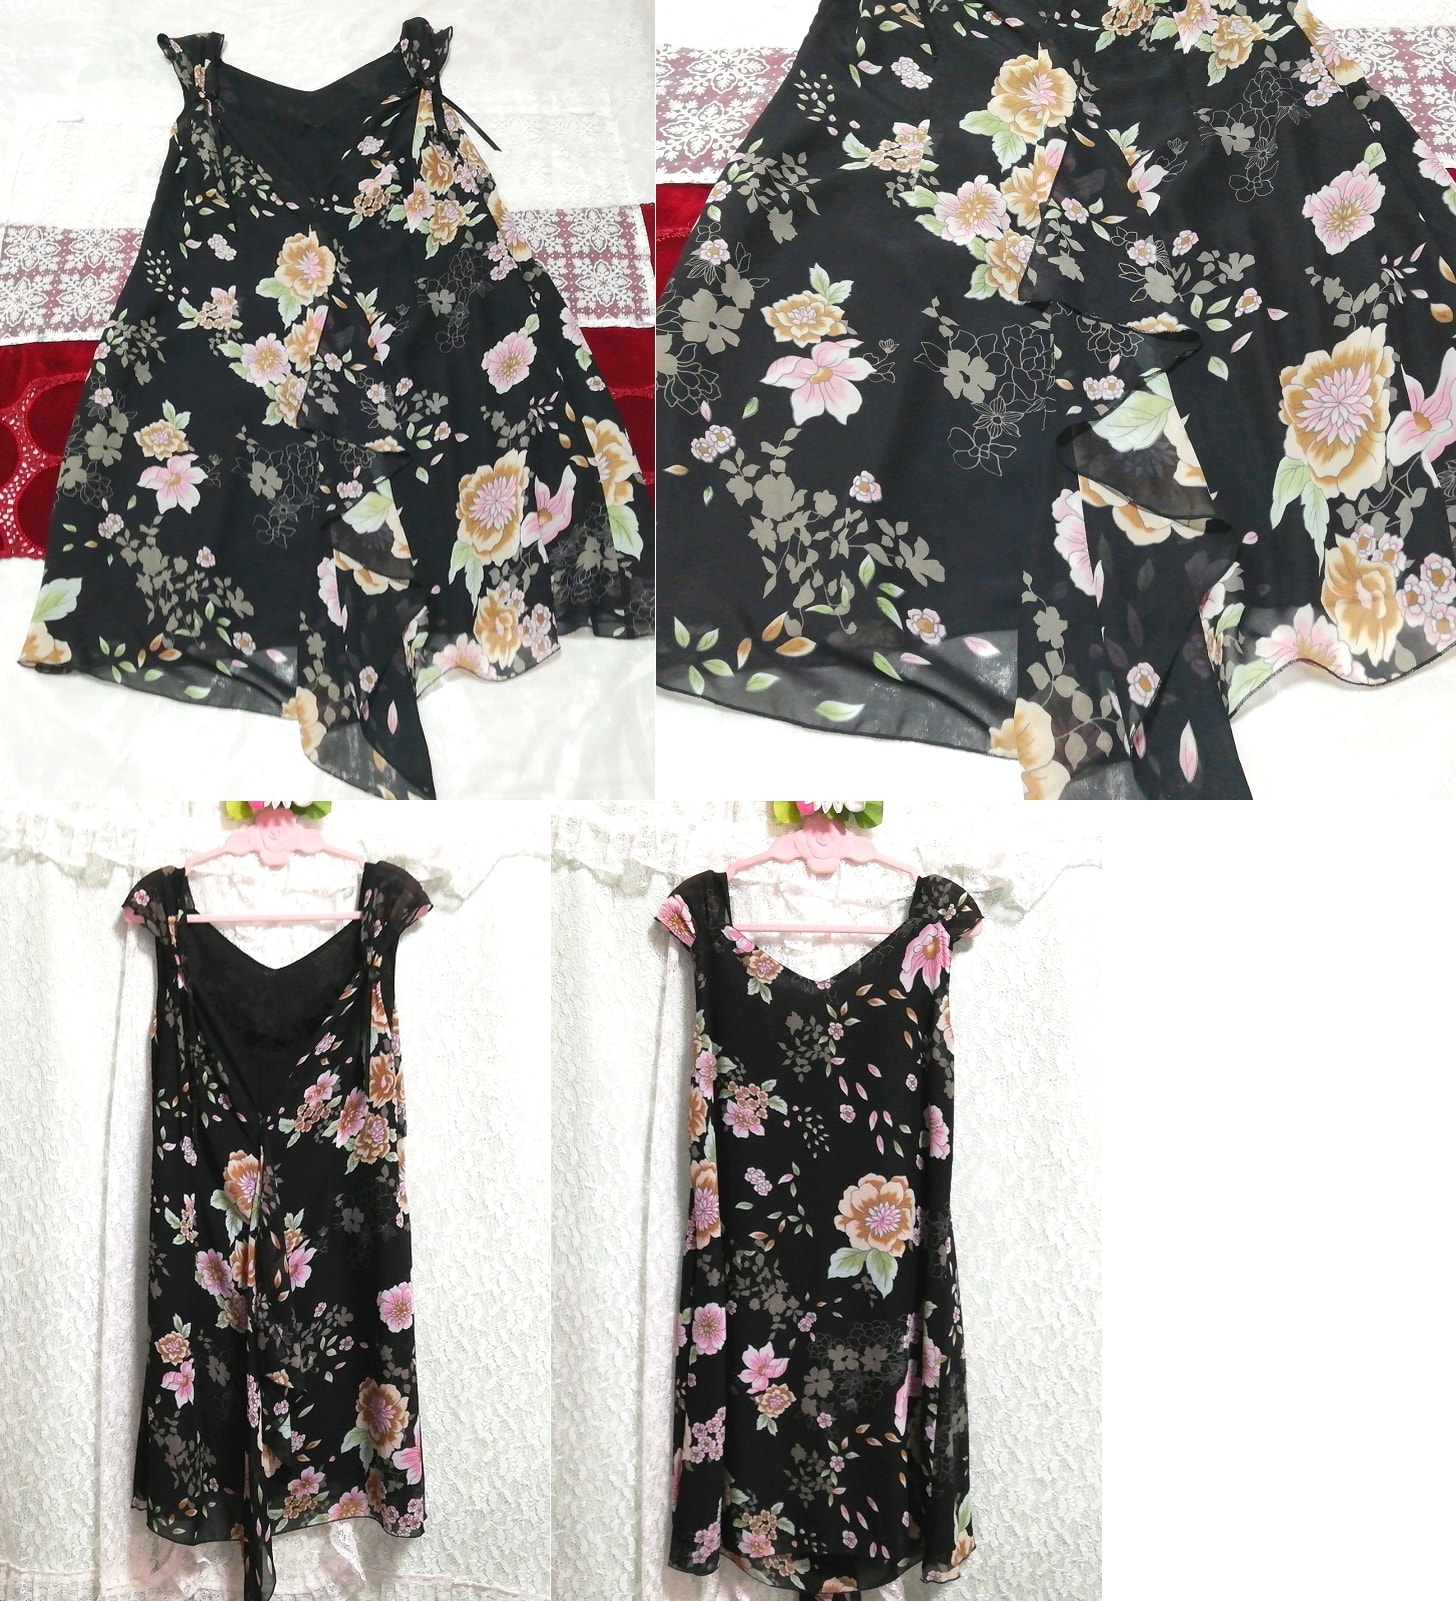 블랙 시폰 꽃무늬 리본 민소매 네글리제 나이트가운 나이트웨어 드레스, 무릎길이 스커트, m 사이즈